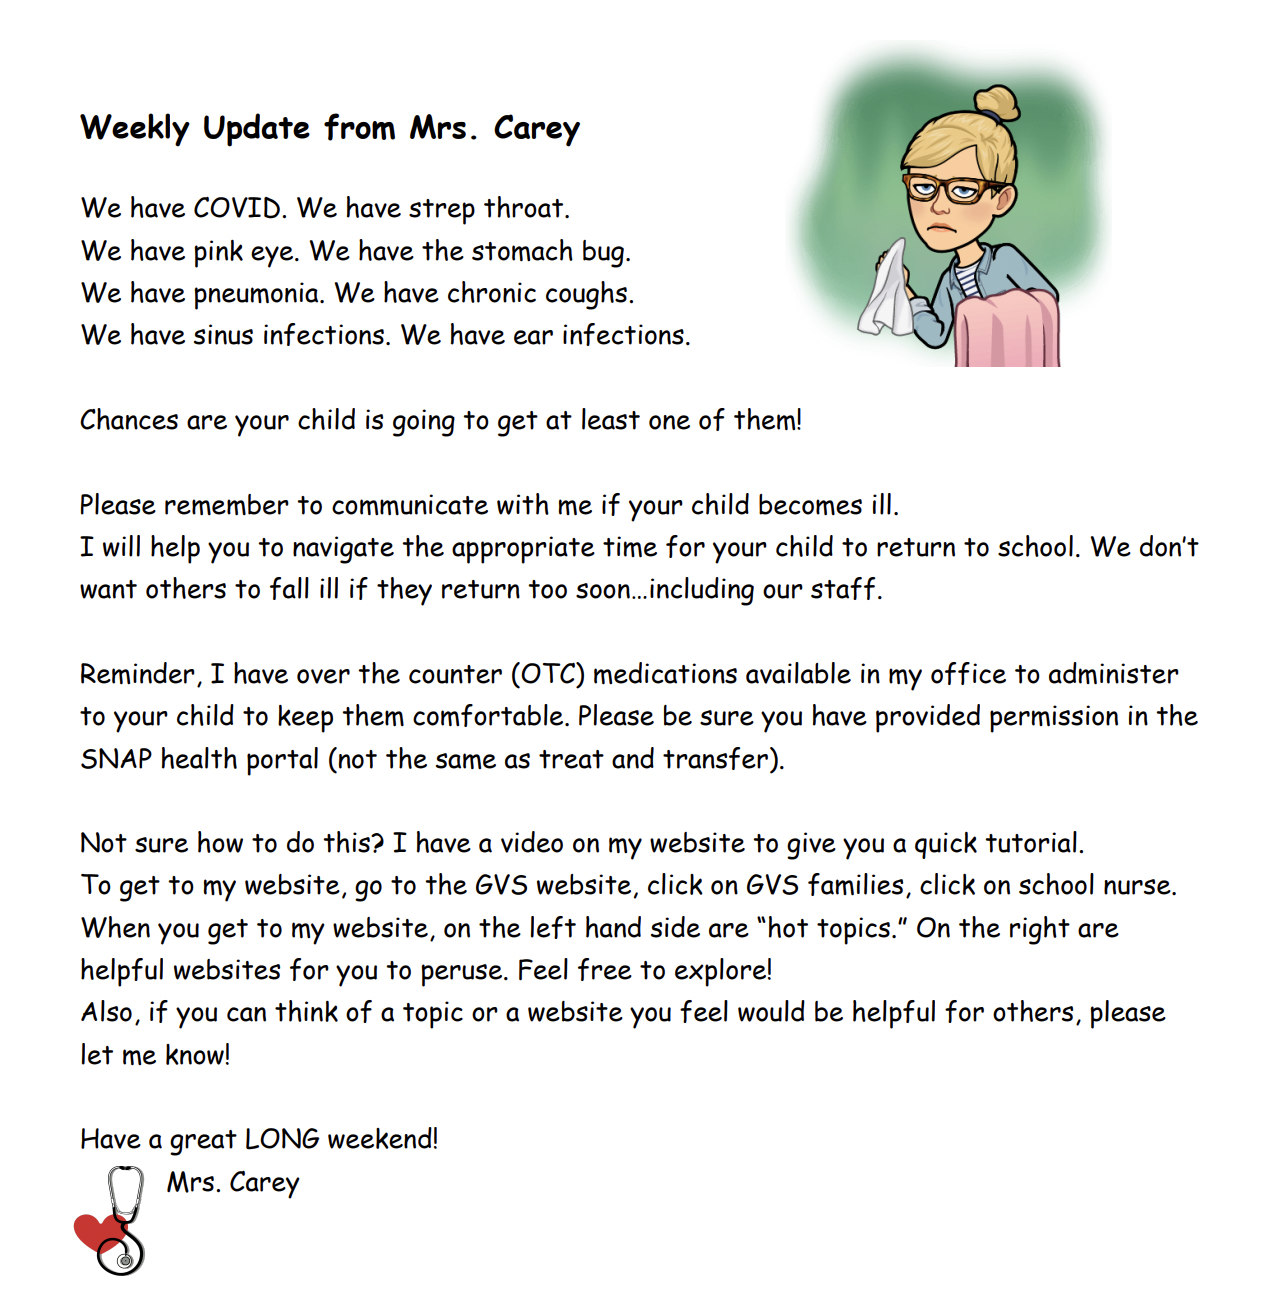 Mrs. Carey update